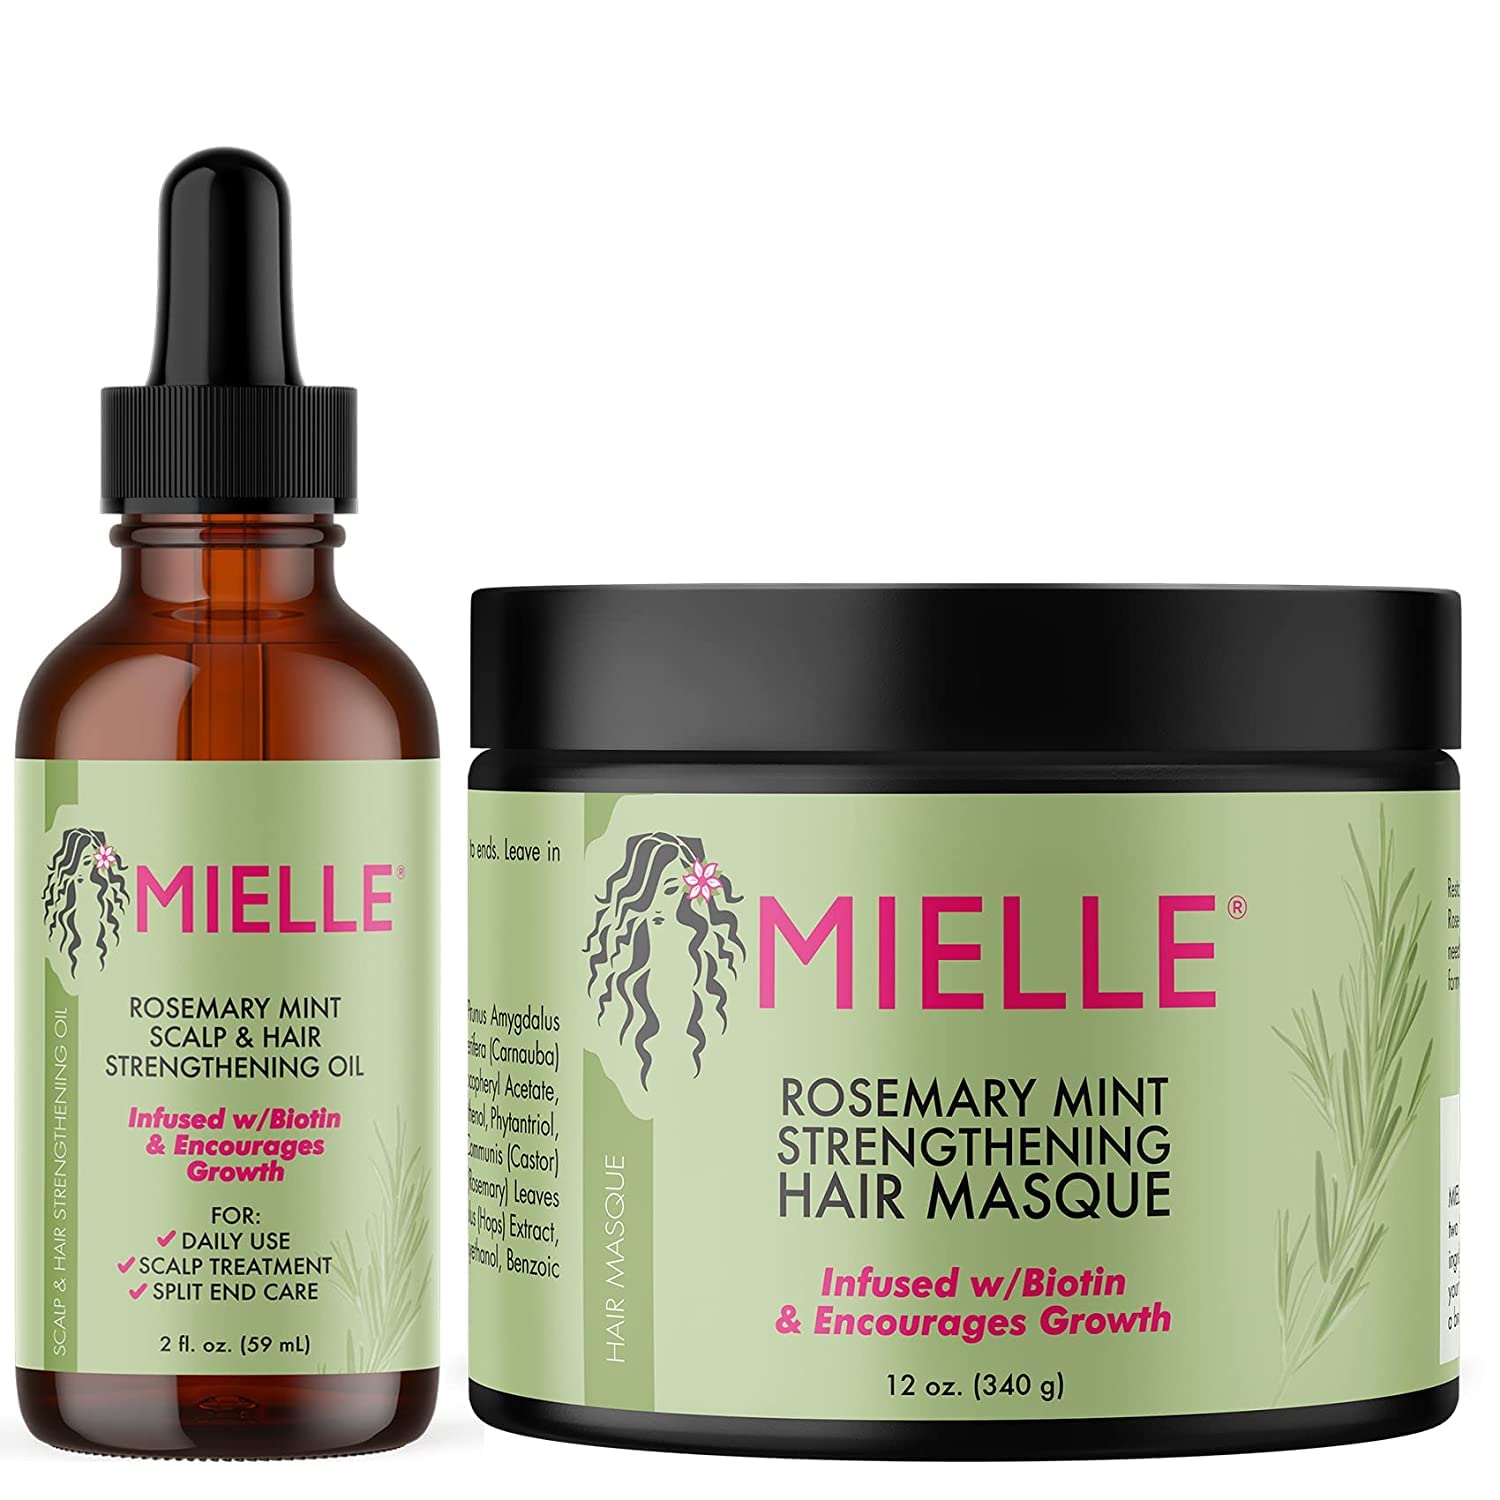 Mielle Rosemary Mint Scalp & Hair Strengthening Oil